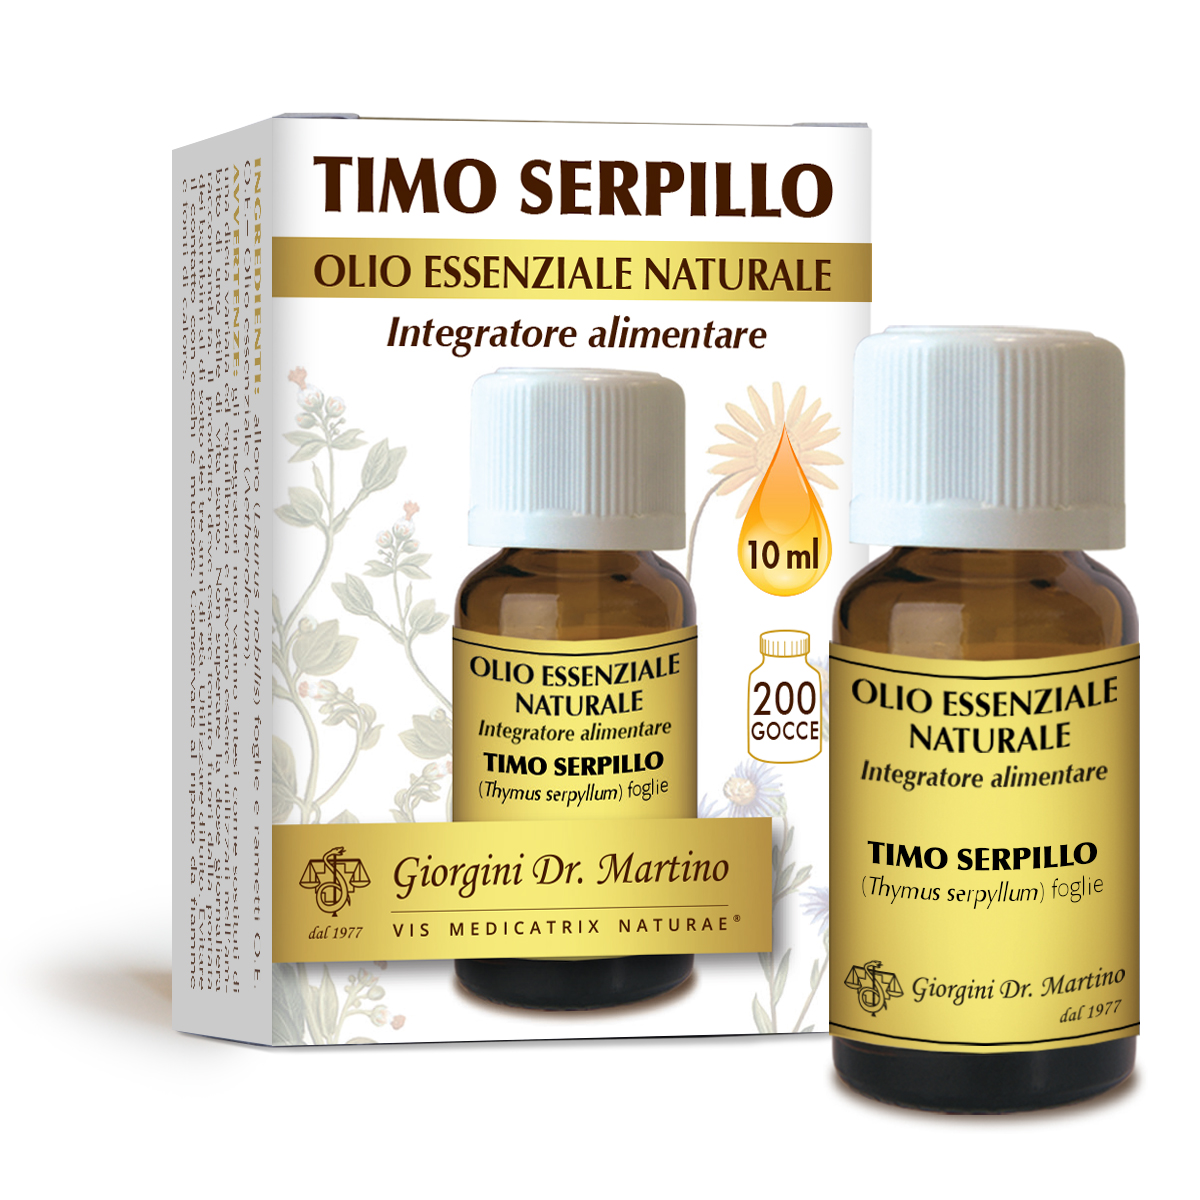 TIMO SERPILLO Olio essenziale naturale